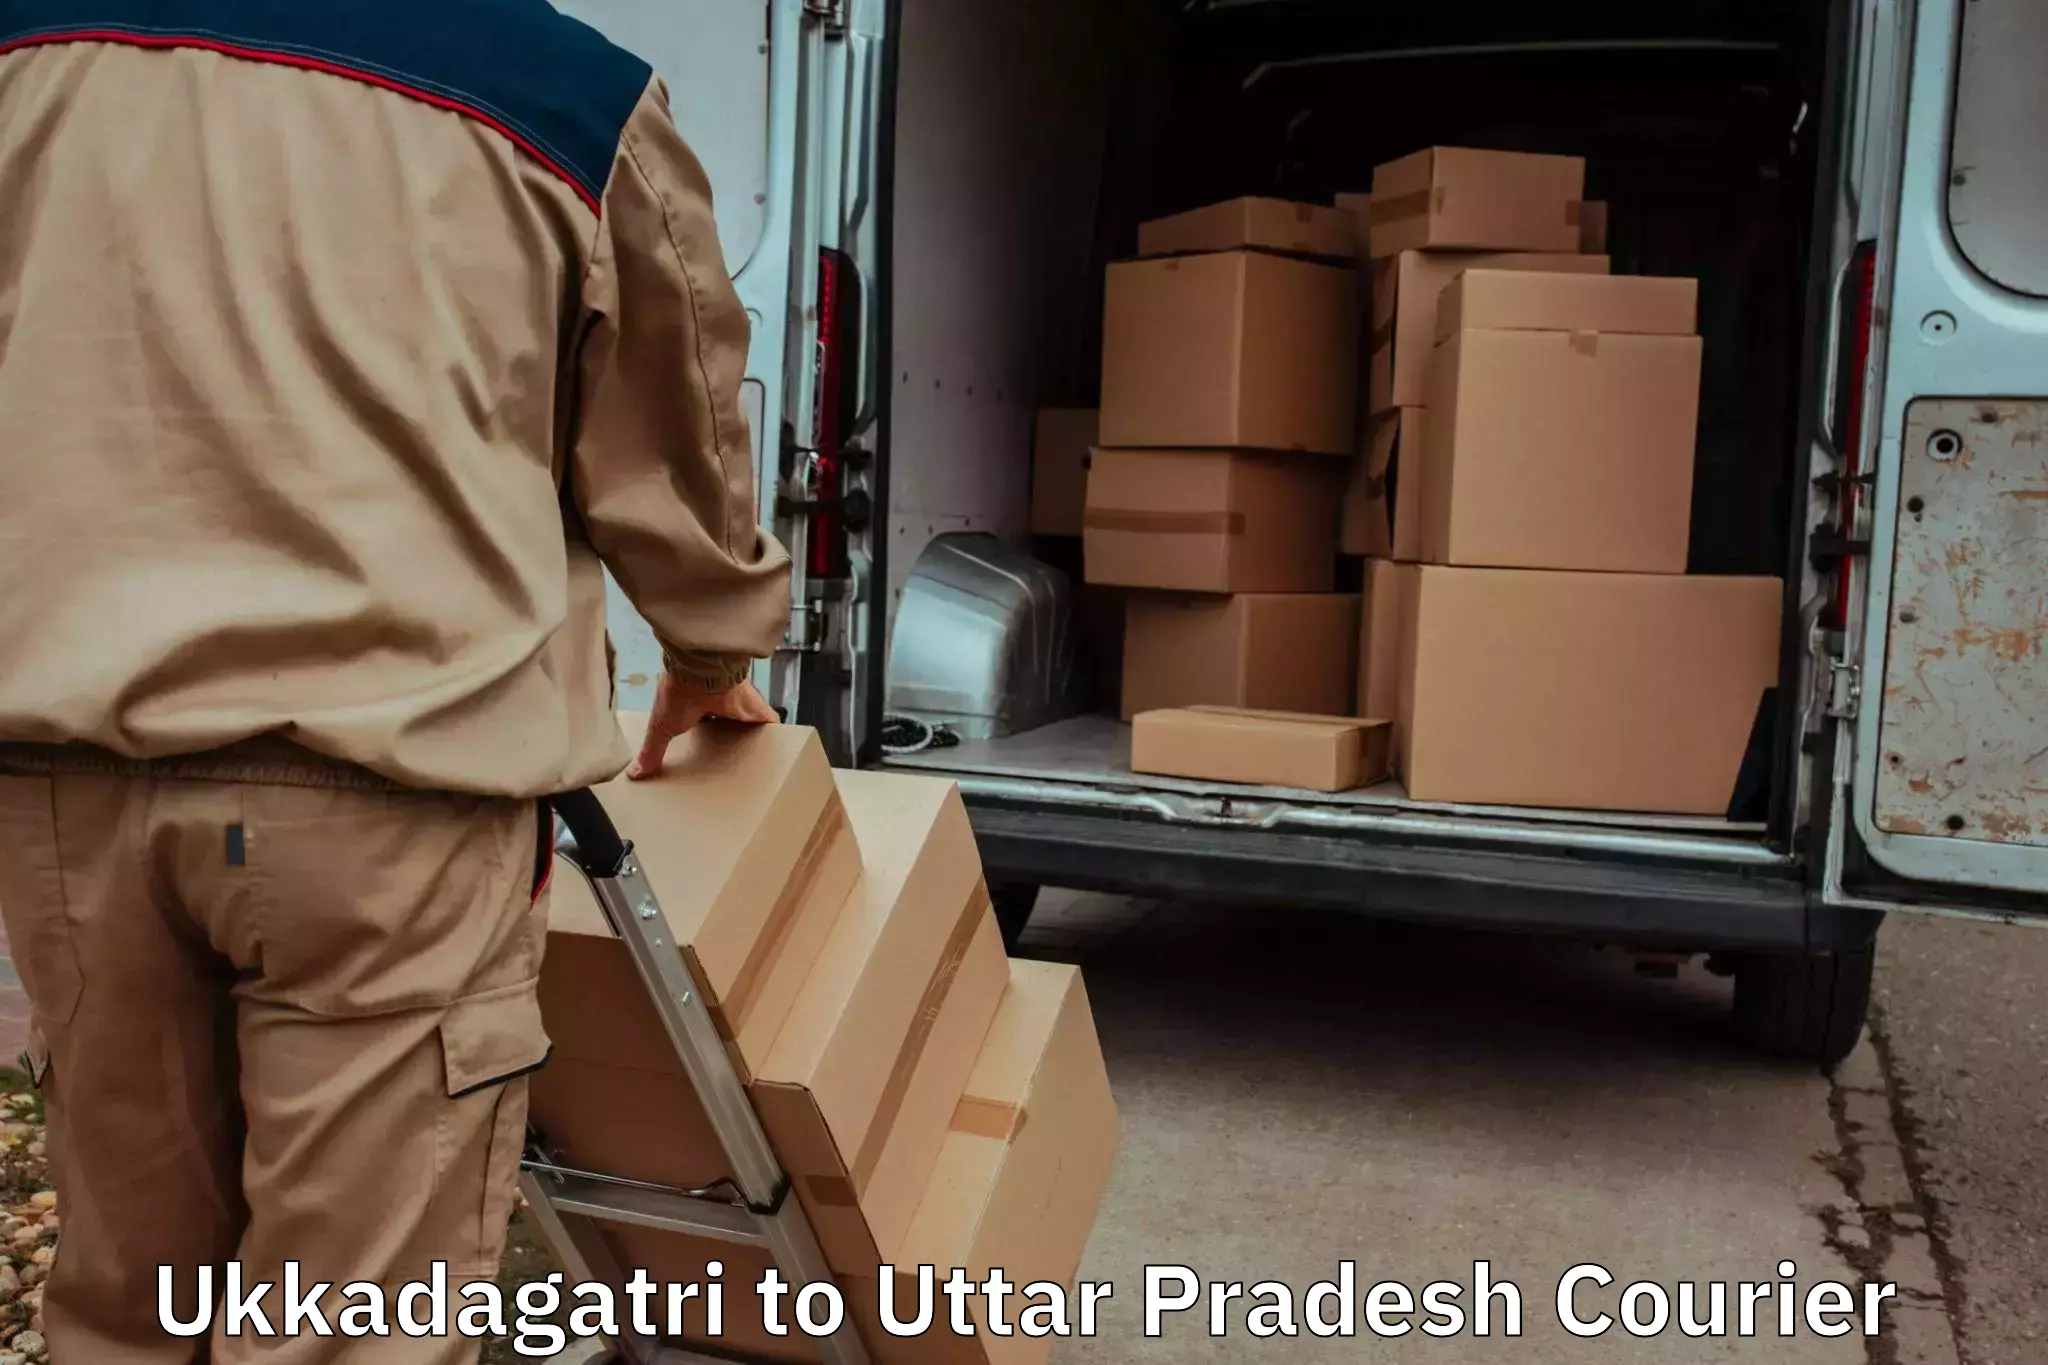 Furniture moving specialists Ukkadagatri to Hapur